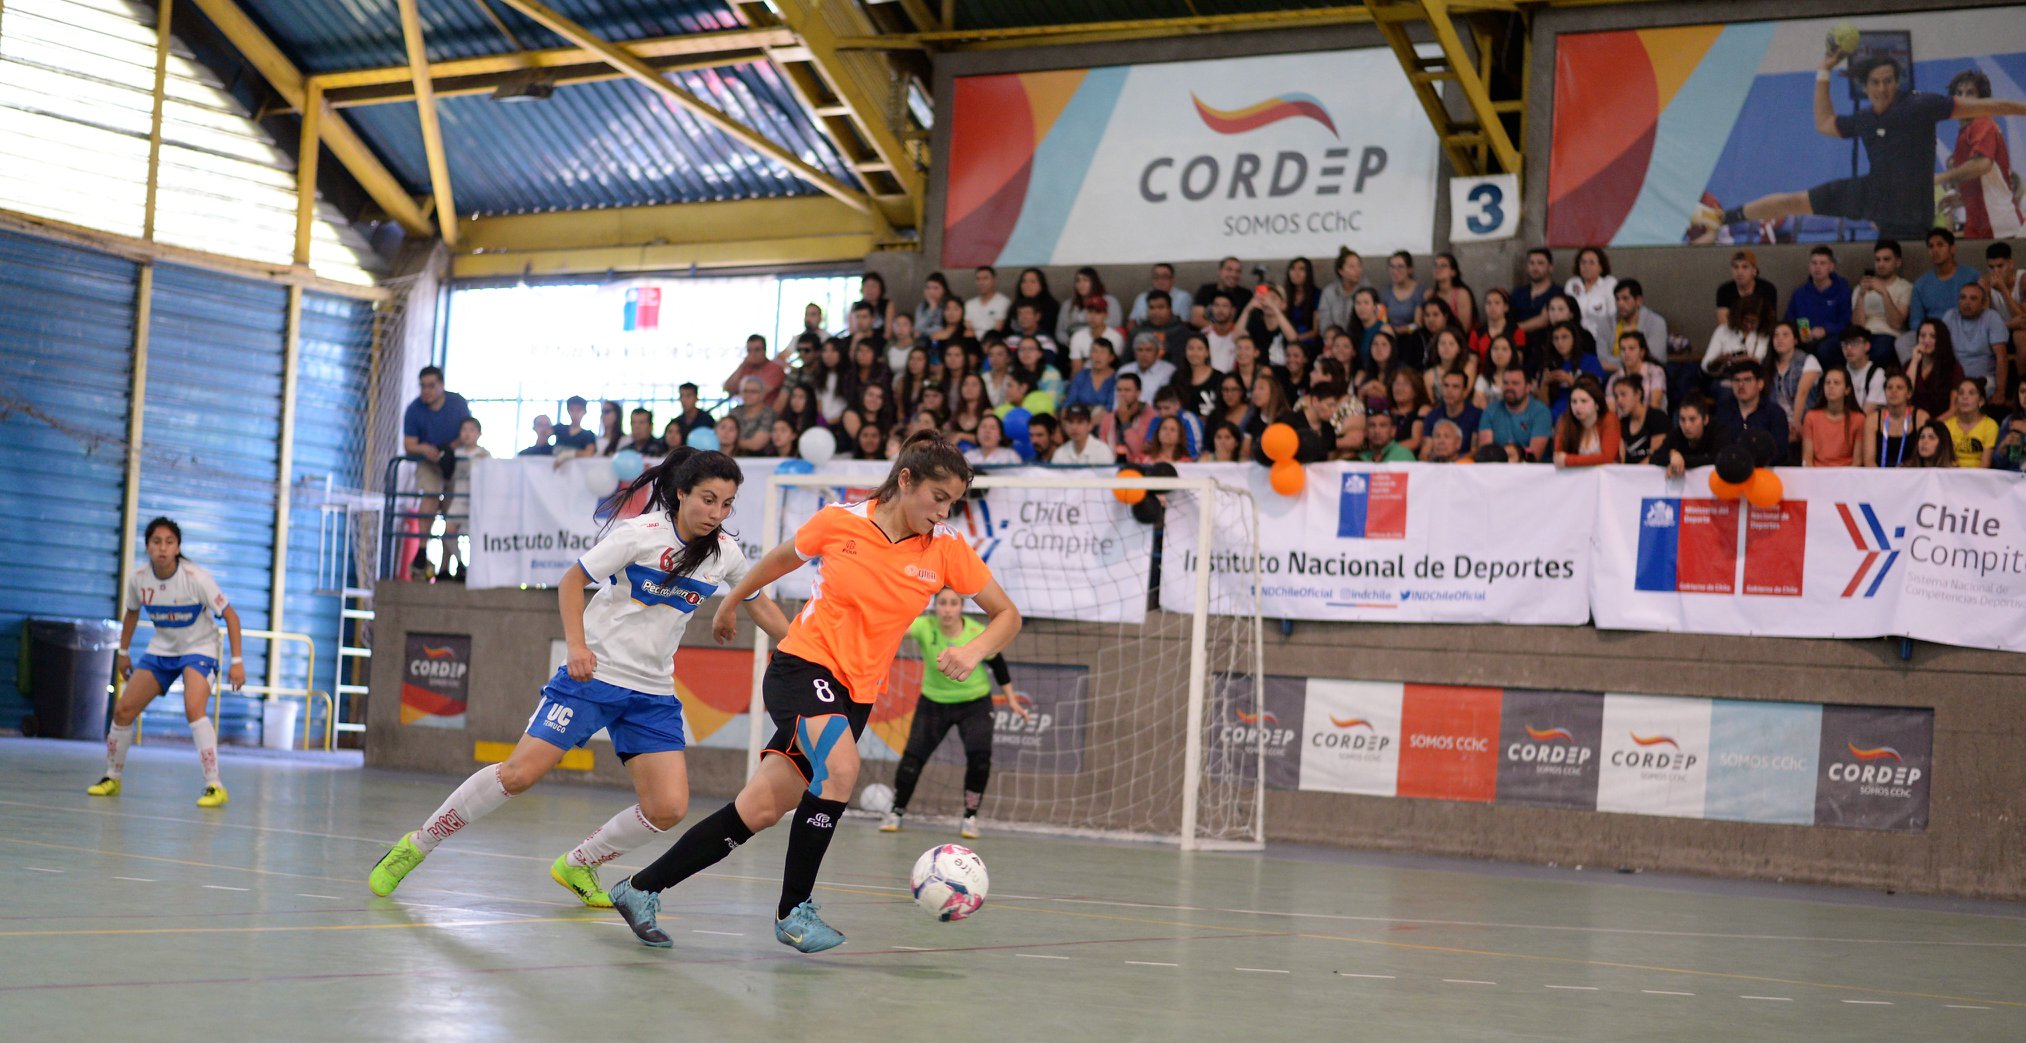 Final Nacional de las Ligas Deportivas de Educación Superior en Magallanes será reprogramada debido a la situación de contingencia